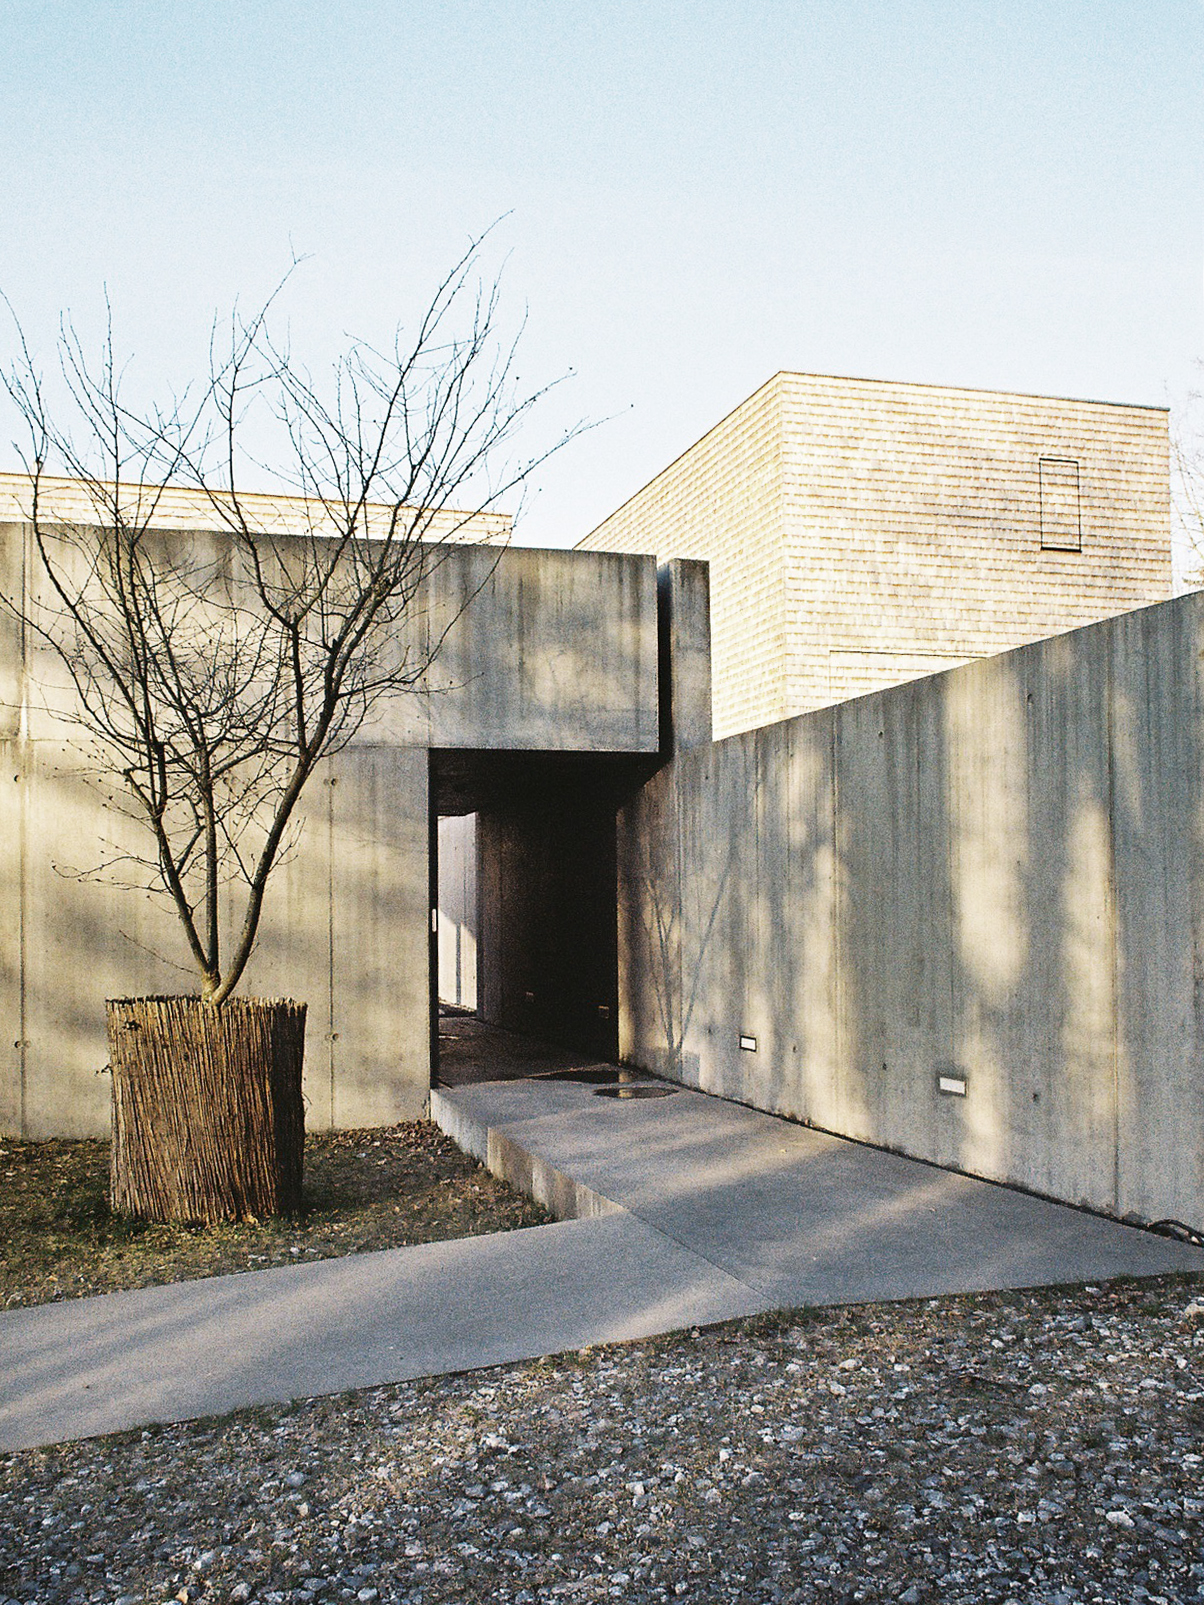 Michael-Becker-Architects-Architekten-Haus-g-04